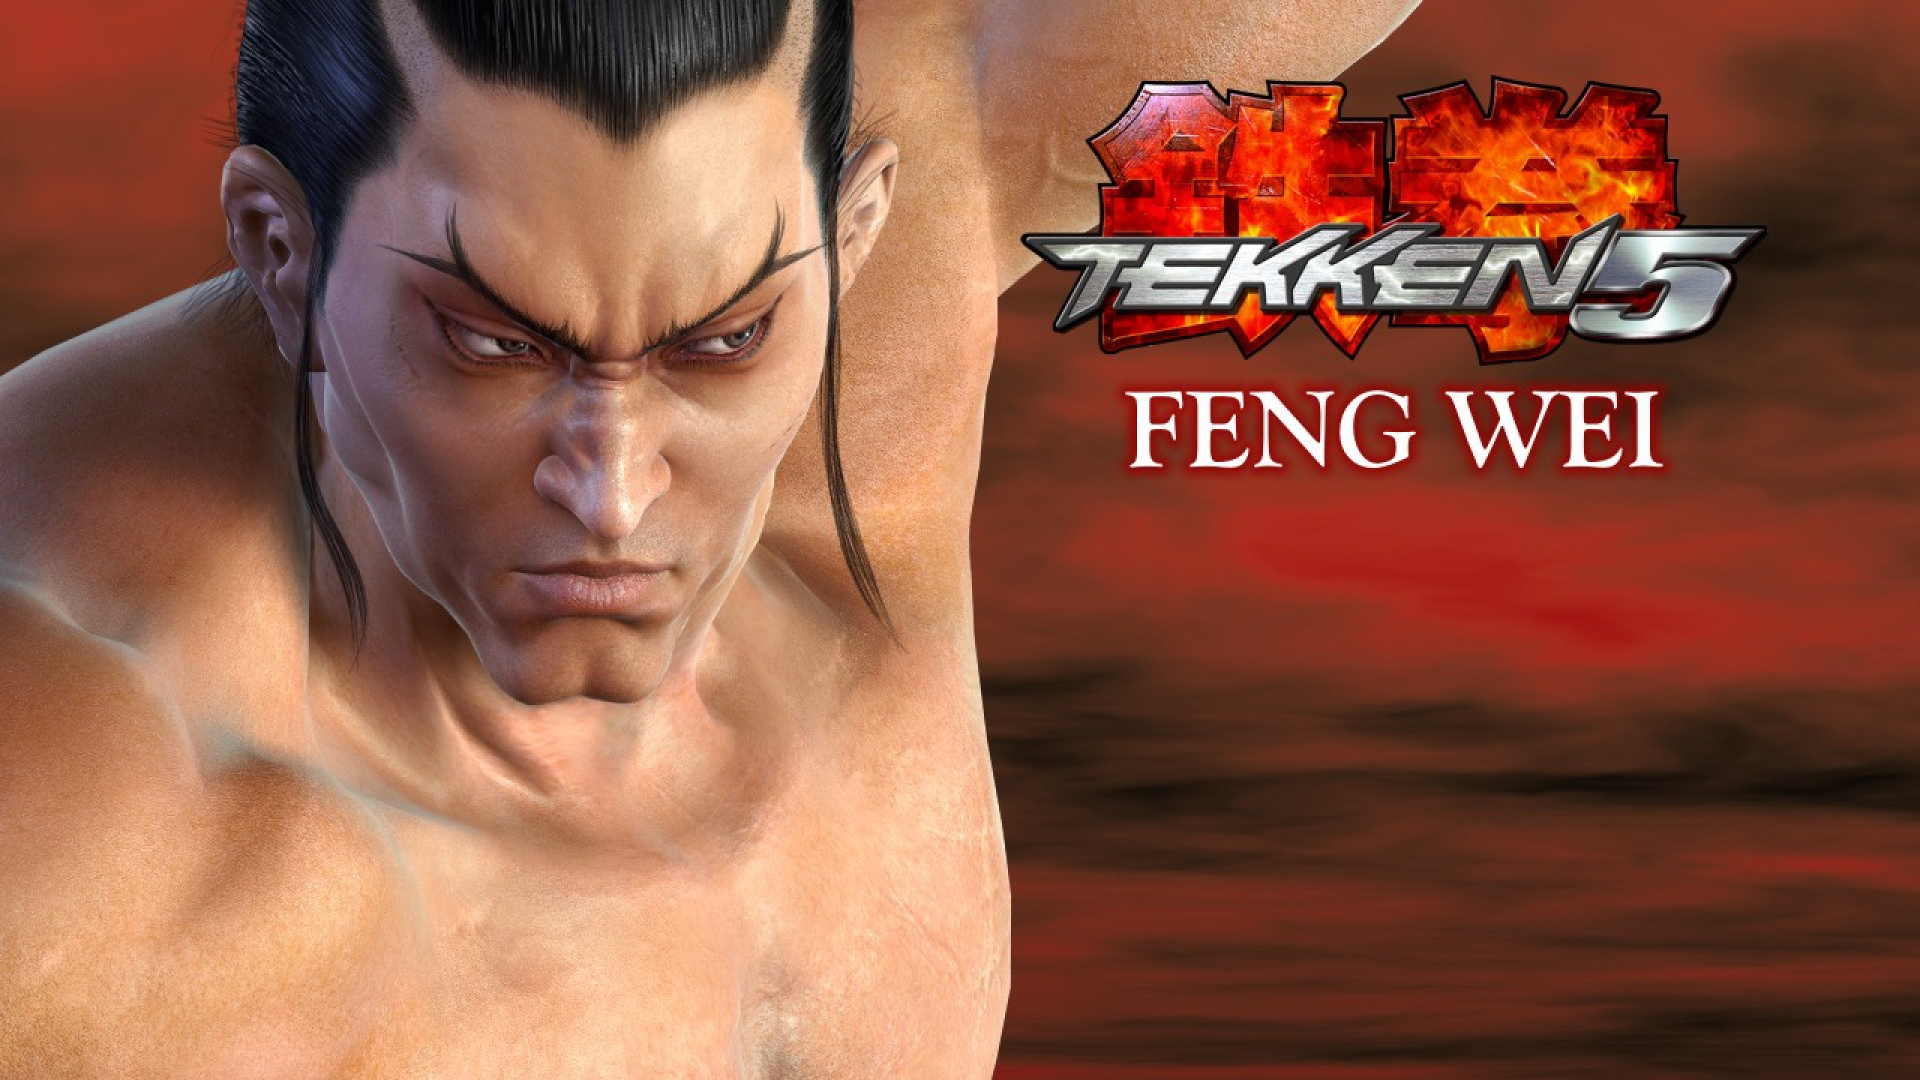 Feng Wei Tekken 5 1920x1080